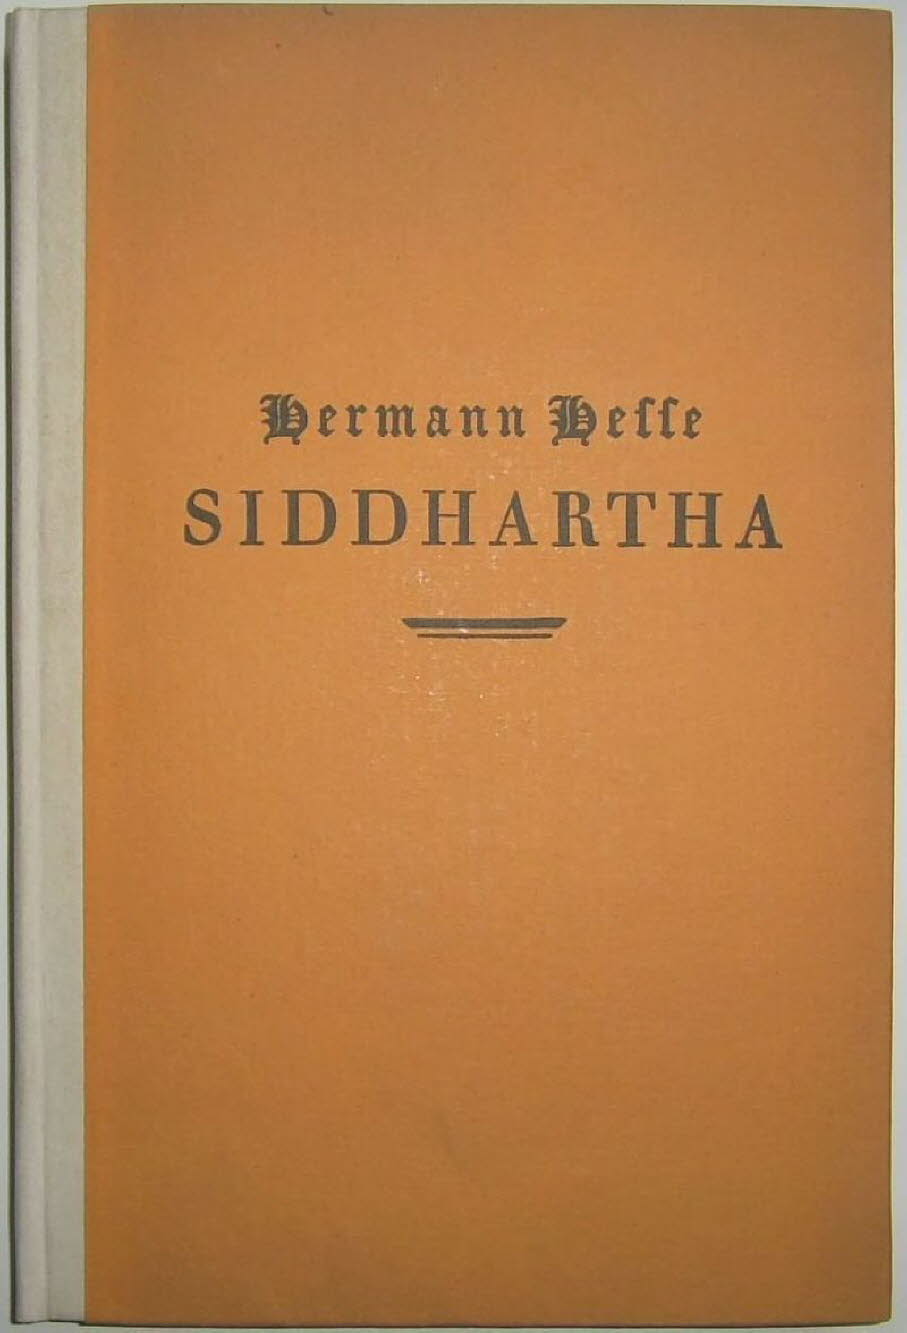 Erstauflage von 1922: Der Roman „Siddhartha“ schrieb Herman Hesse nach einem Besuch in Indien, Indonesien und Sri Lanka. Siddhartha ist ein Roman von Hermann Hesse aus dem Jahr 1922, der sich mit der spirituellen Reise der Selbstfindung eines Mannes namen,